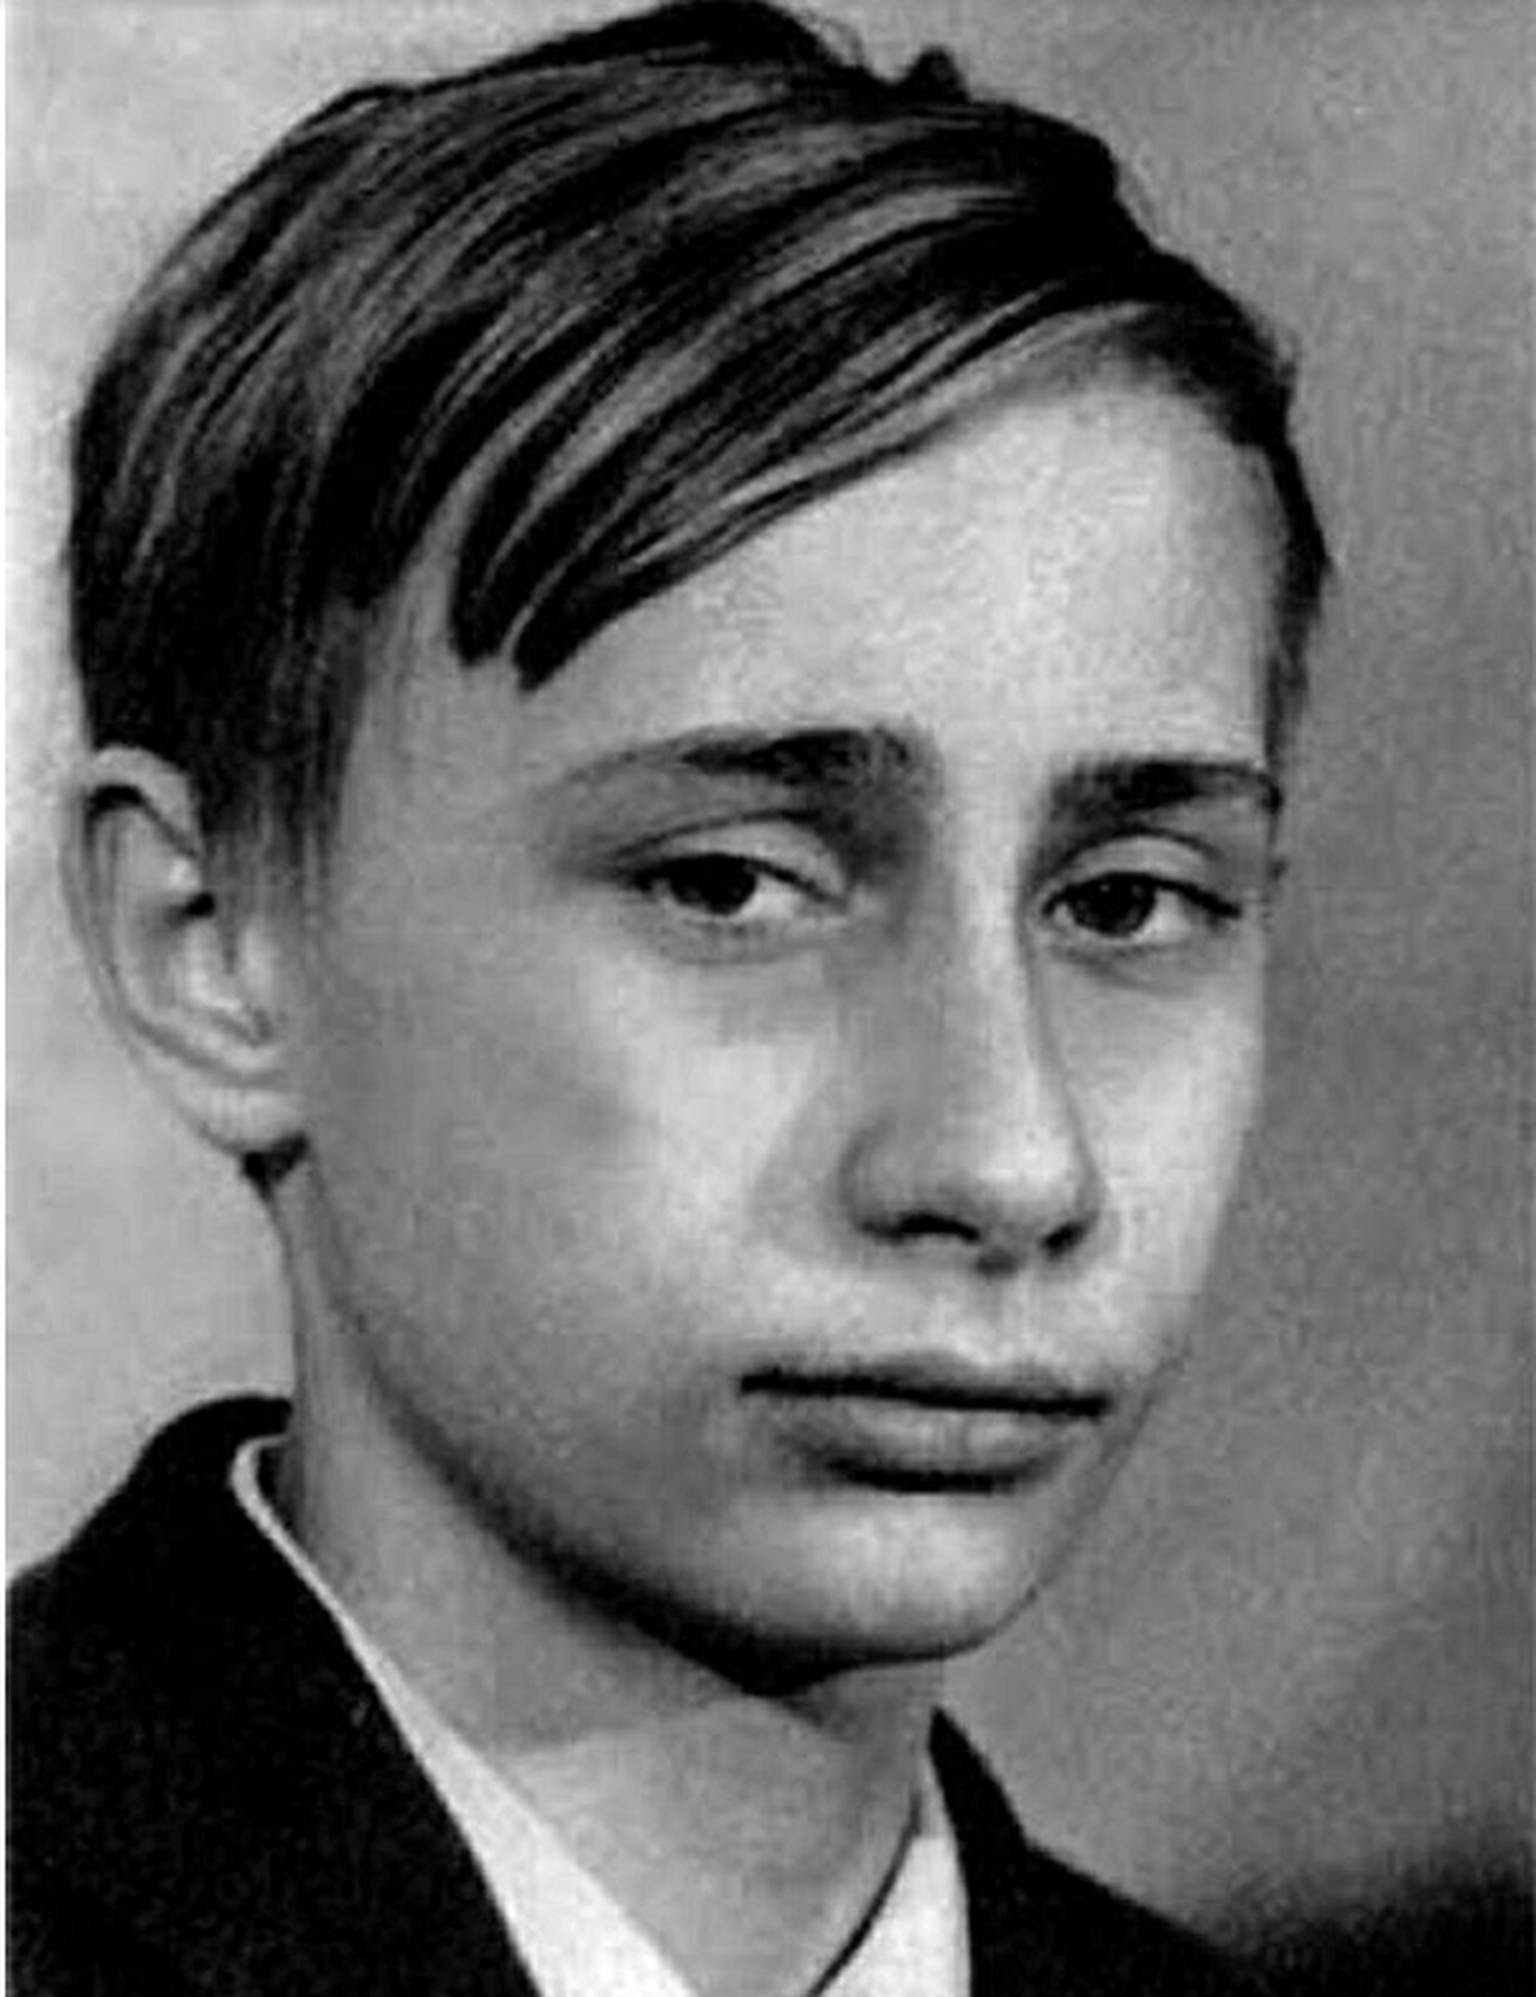 Noor Vladimir Putin.